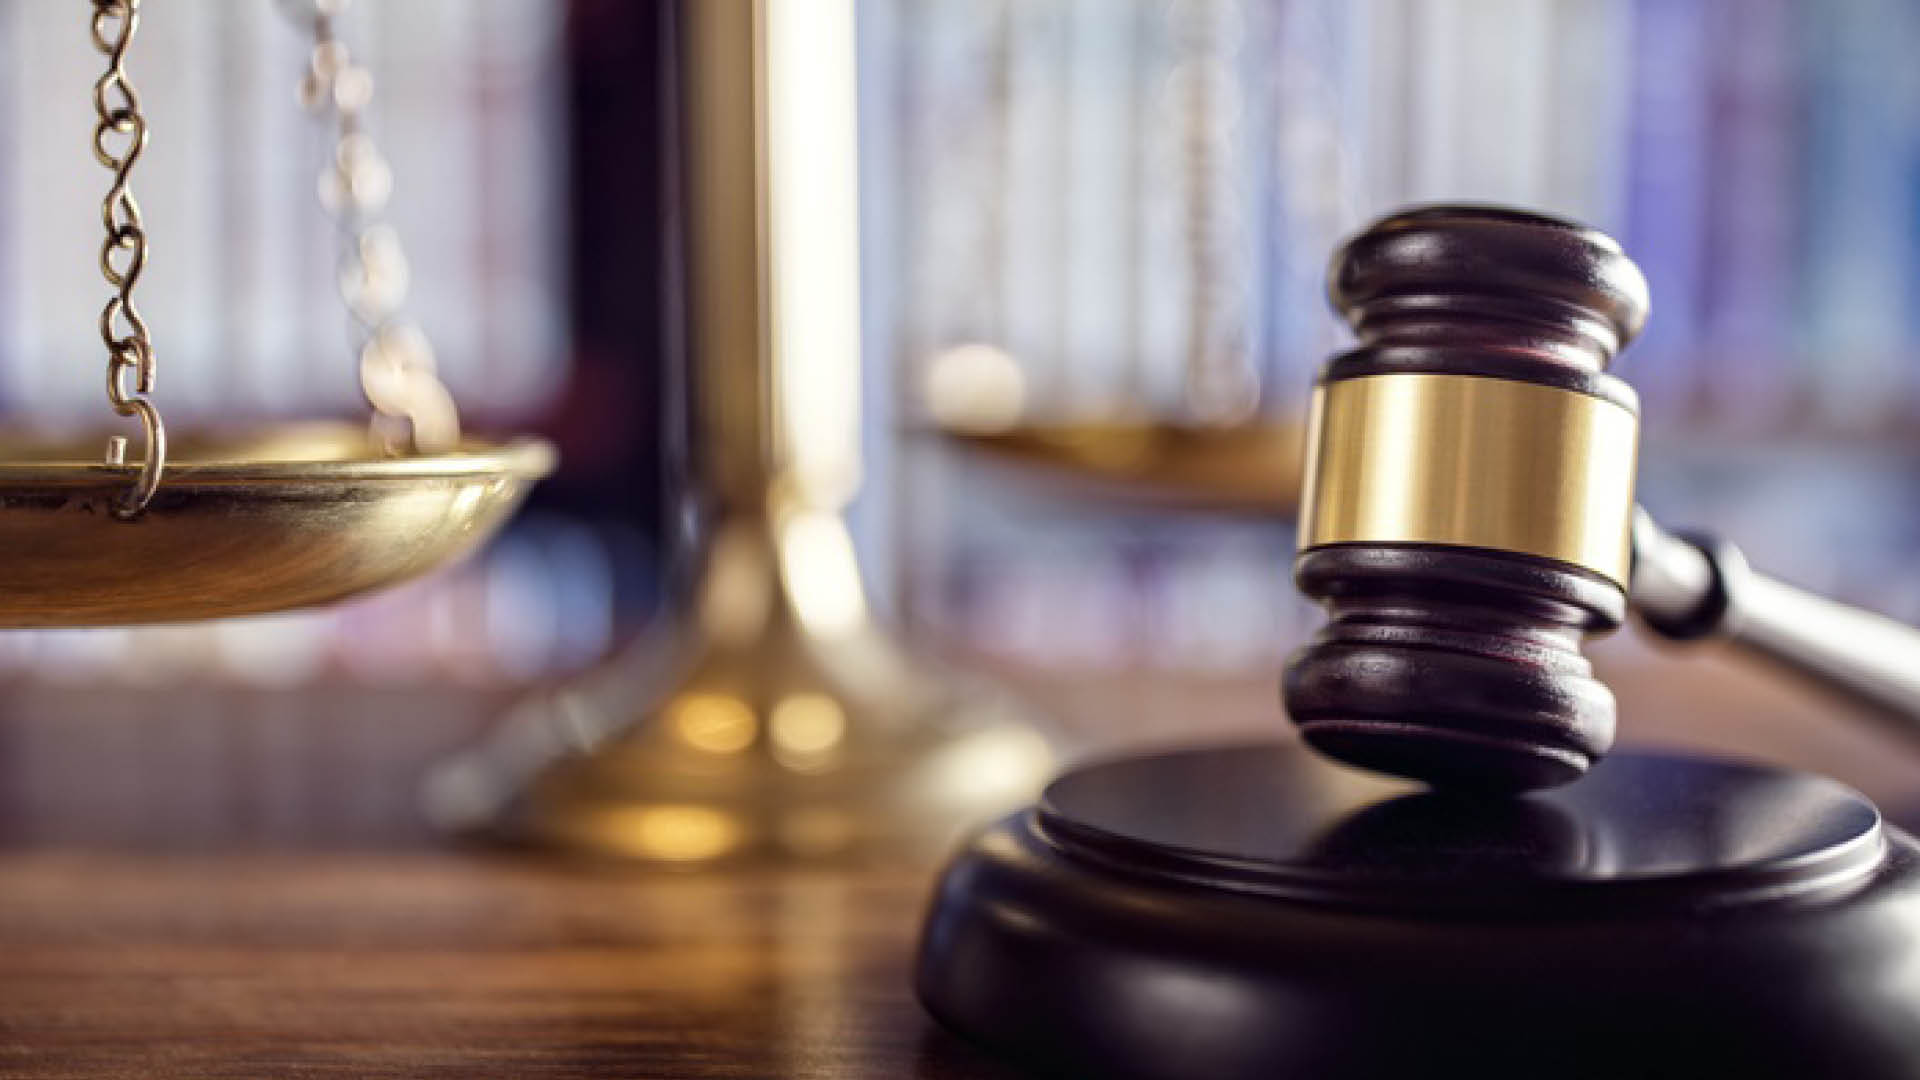 Litigation-dispute-justice-gavel-court